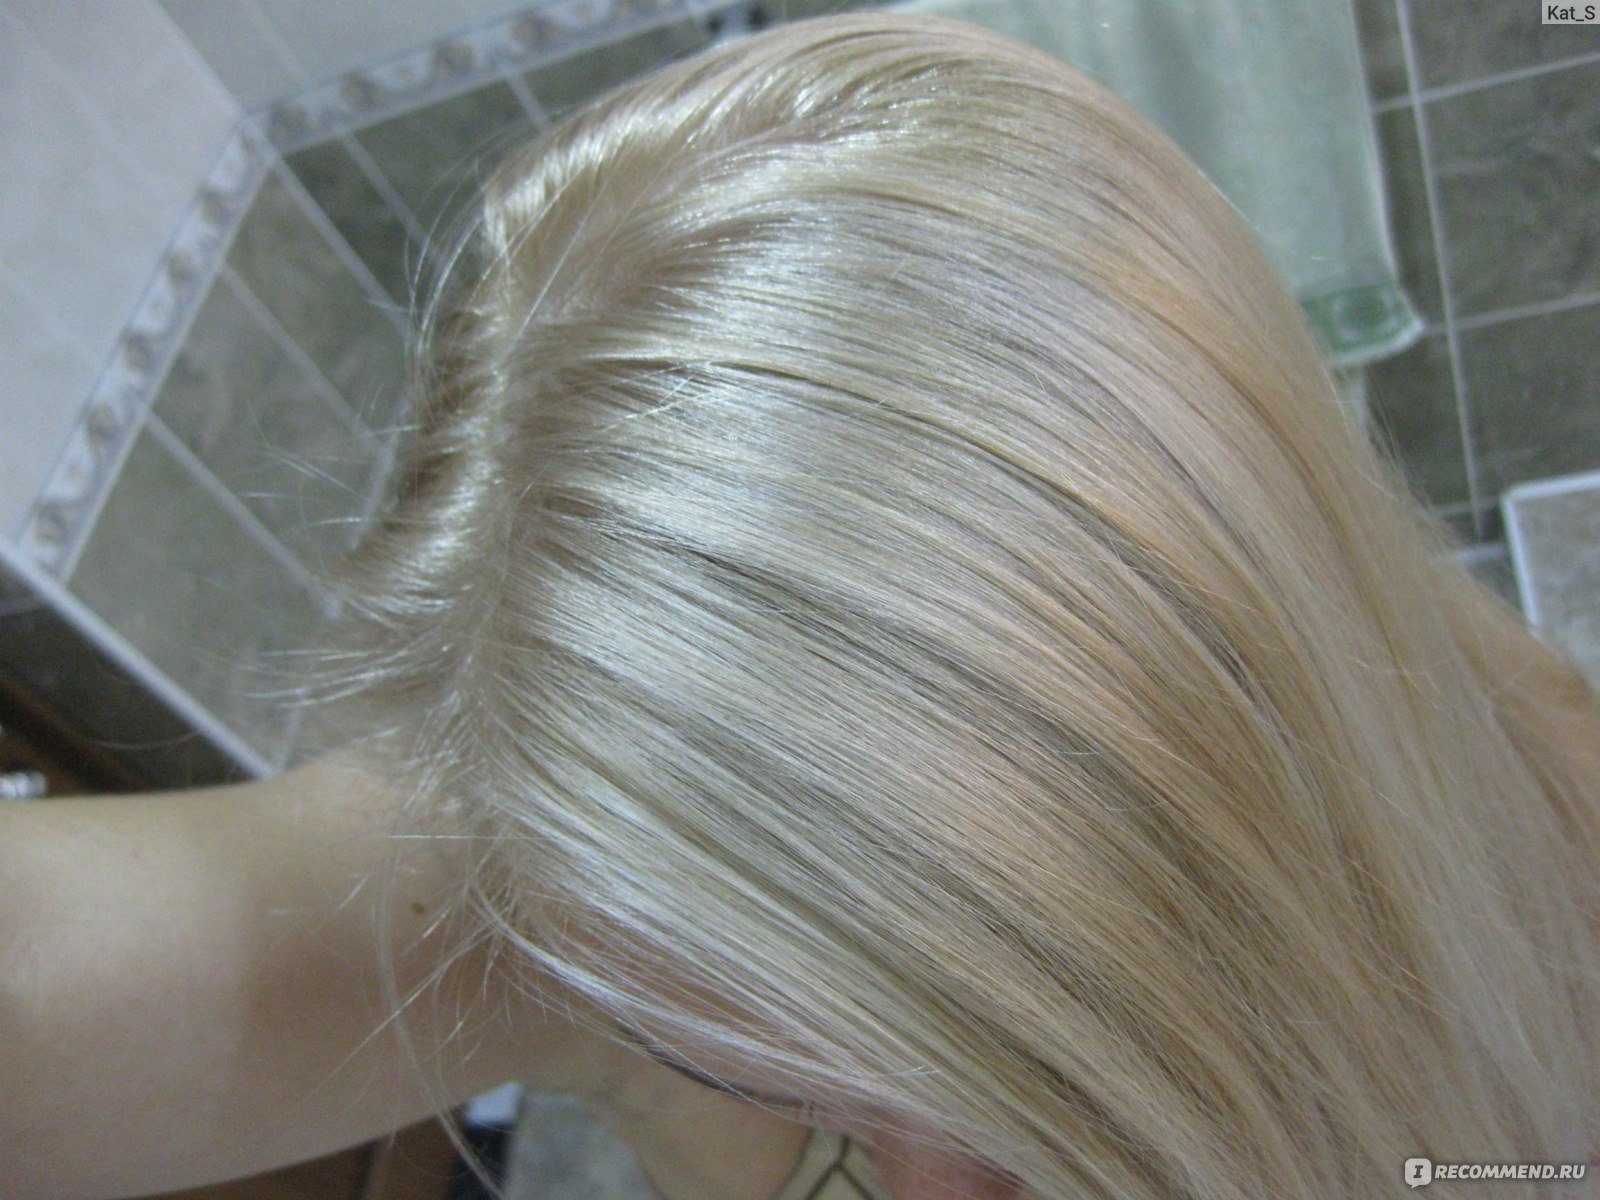 жемчужный цвет волос фото эстель